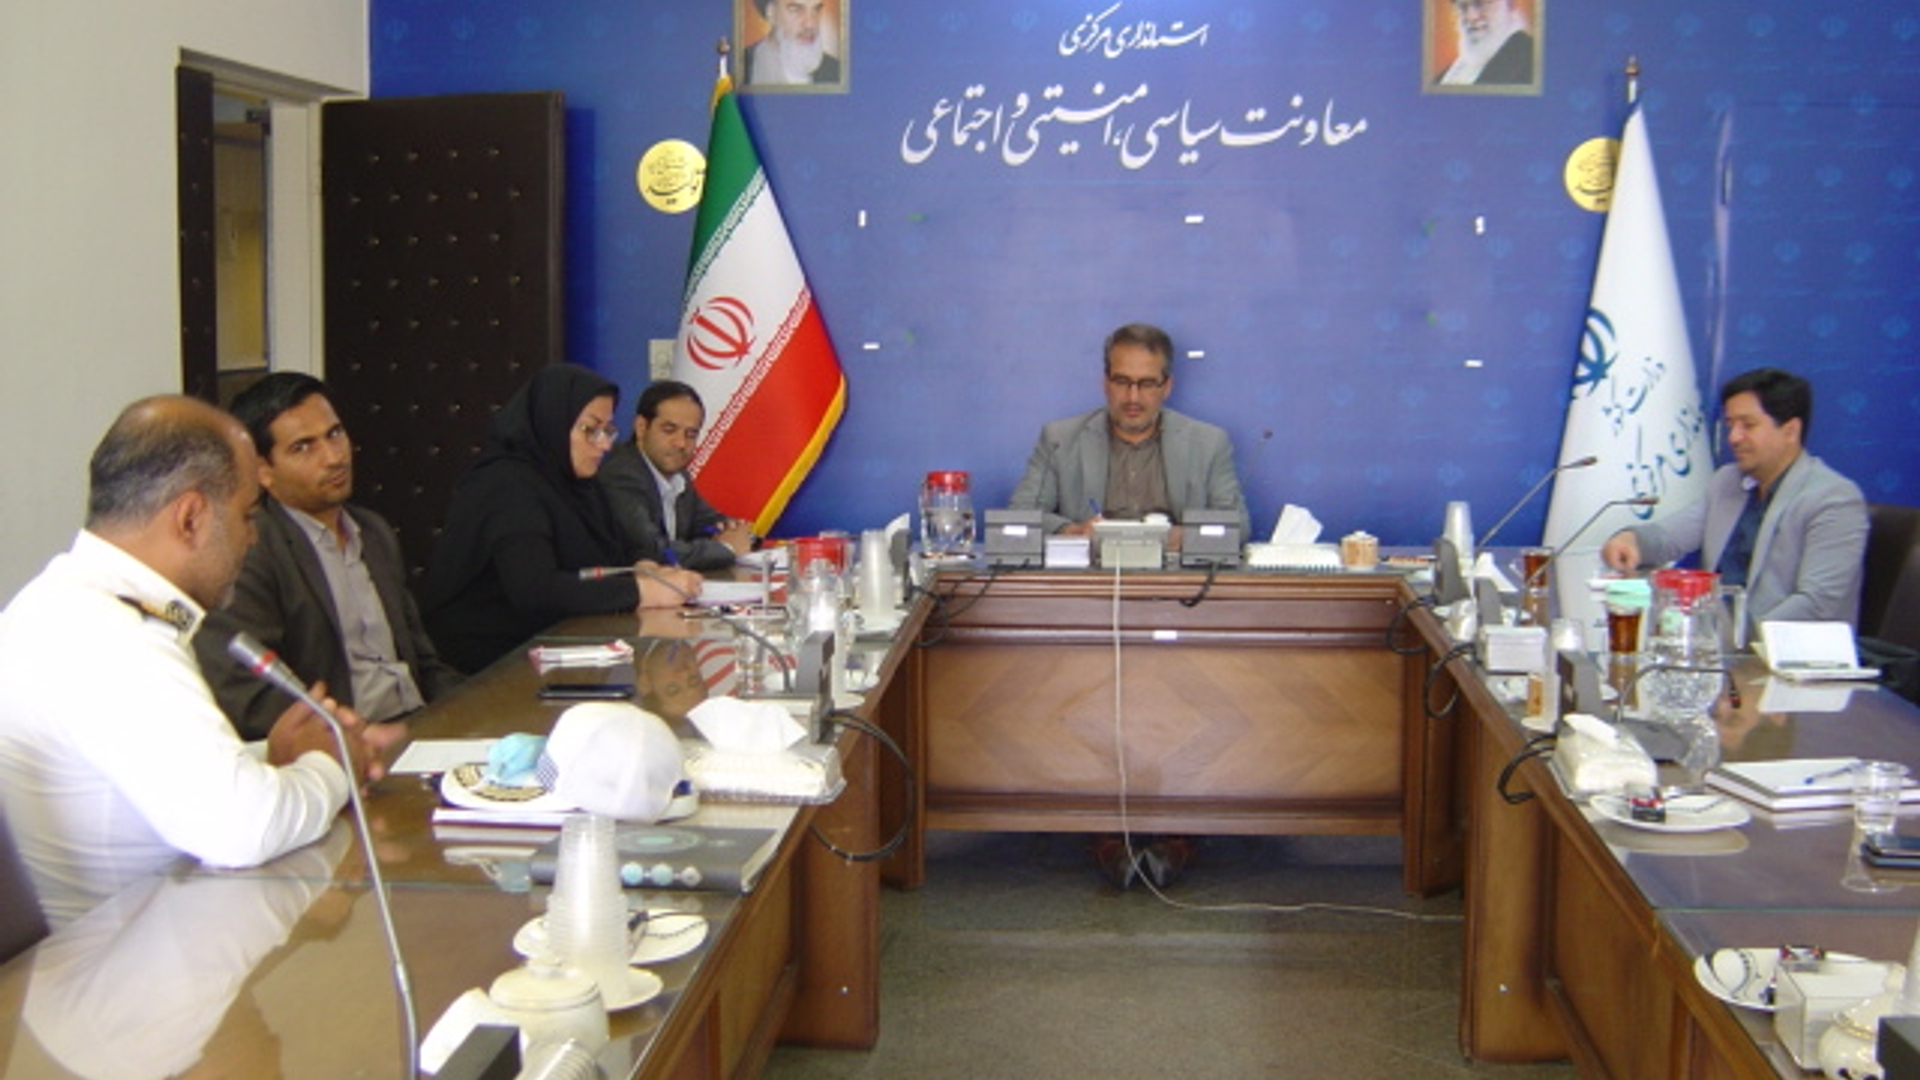 جلسه کمیته امنیتی بررسی مسائل ترافیکی بازگشایی مدارس در مورخ 1401-6-28 به ریاست آقای رحیمی تبار مدیر کل امنیتی و انتظامی برگزار گردید.